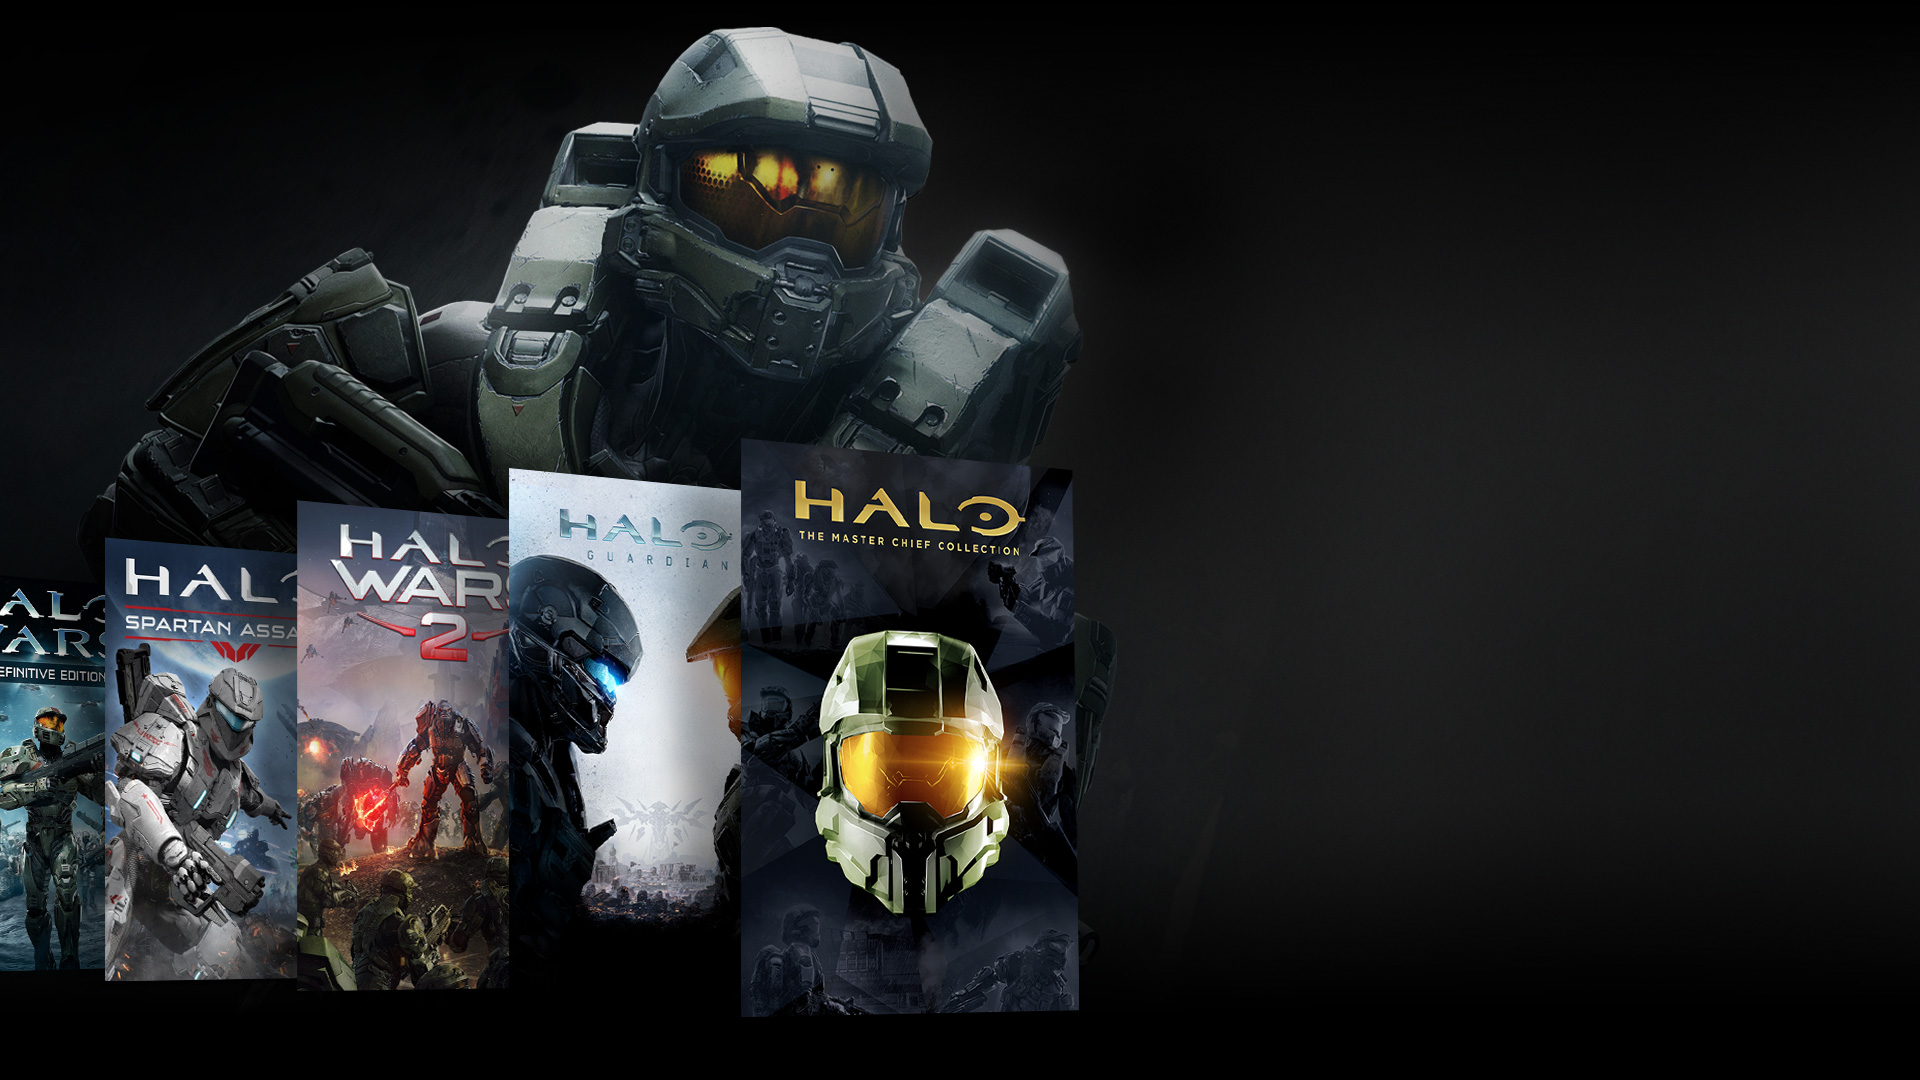 Vue de face du personnage Halo debout derrière un collage des jeux Halo